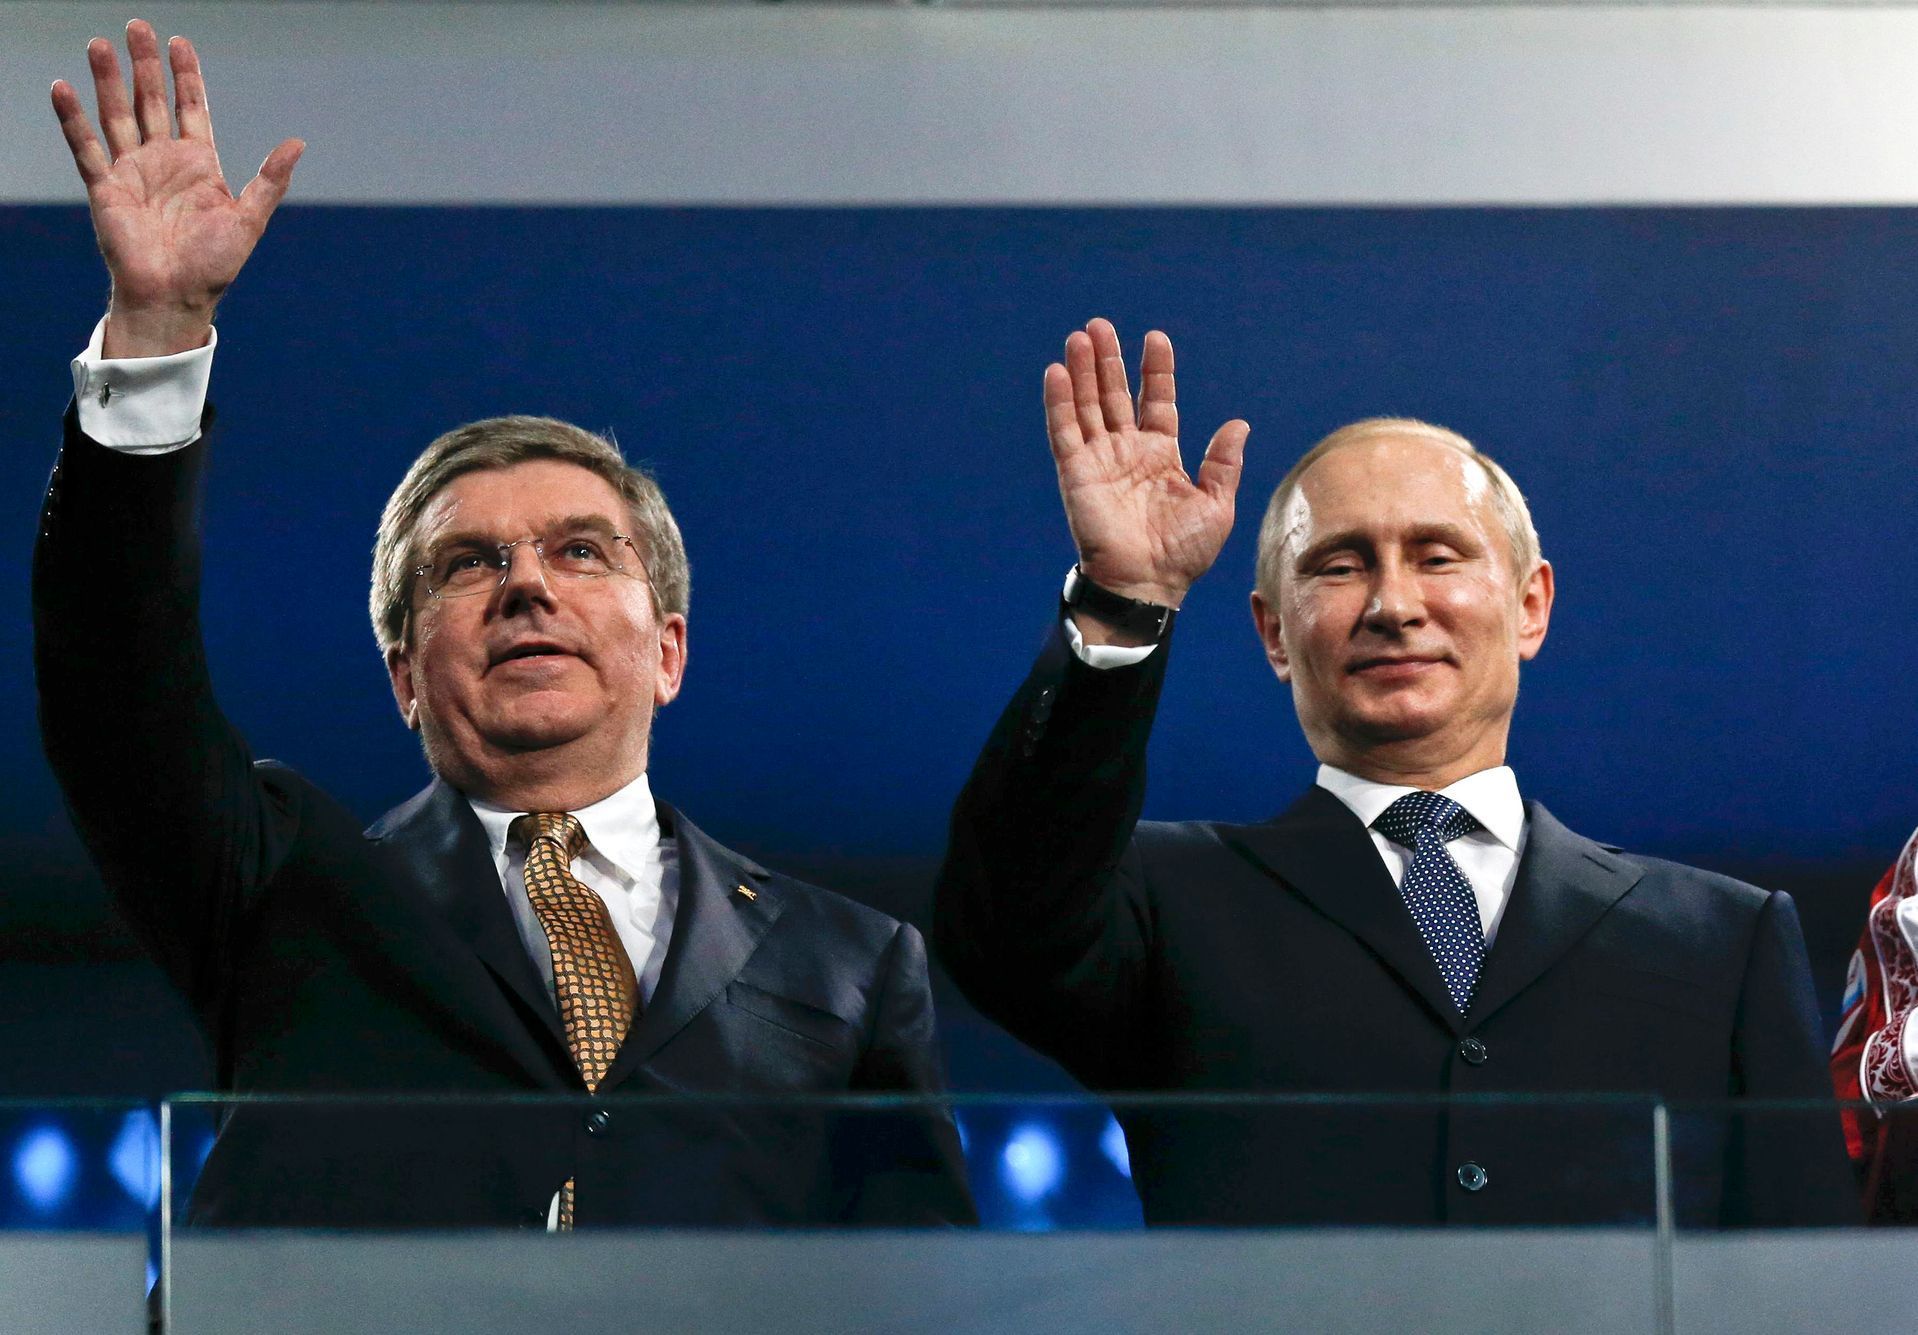 Soči 2014, závěrečný ceremoniál: prezident MOV Thomas Bach a ruský prezident Vladimir Putin